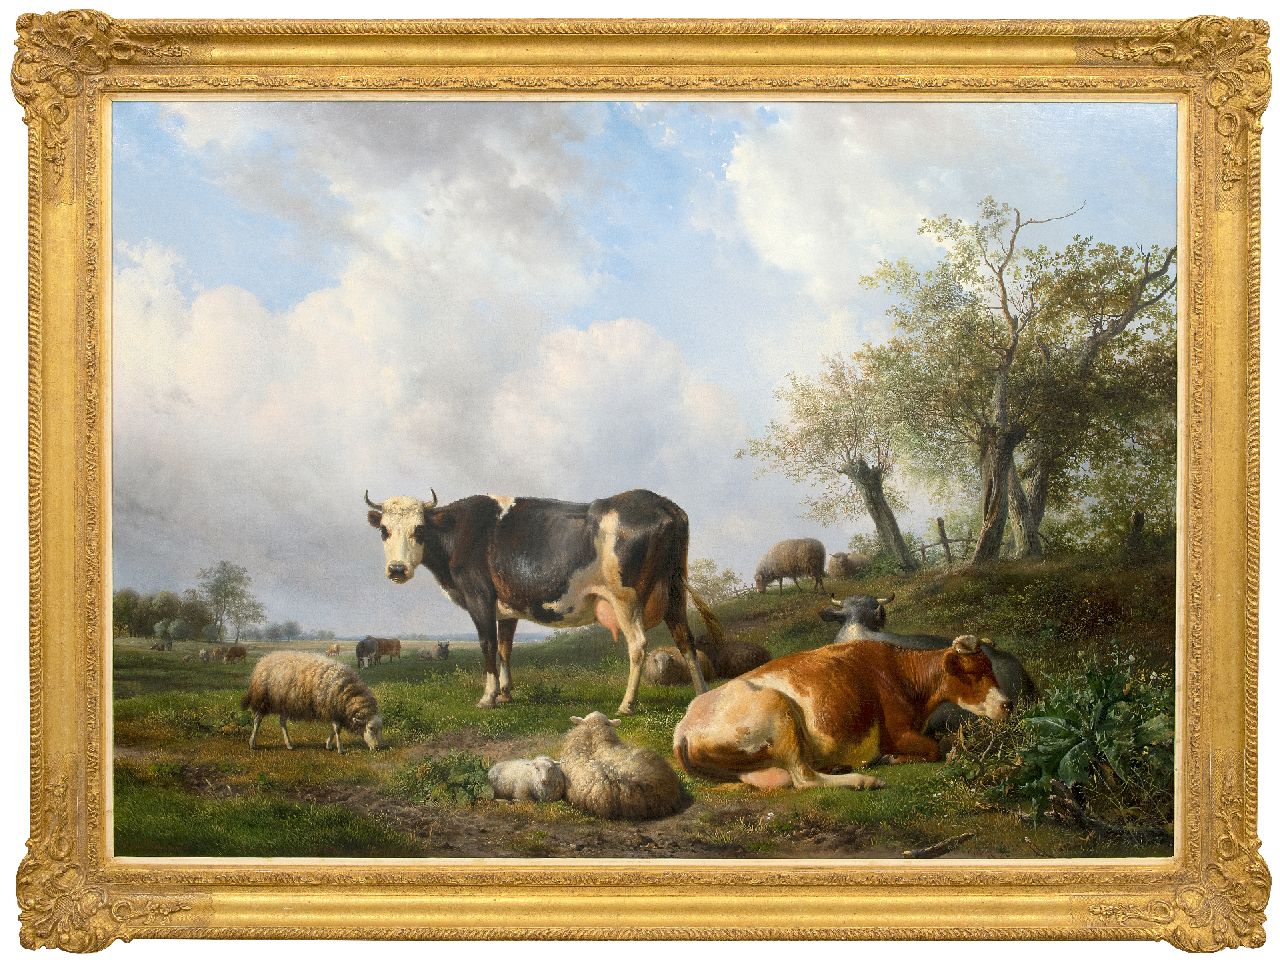 Sande Bakhuyzen H. van de | Hendrikus van de Sande Bakhuyzen | Paintings offered for sale | Landschaft mit ruhenden Kühen und Schafen, oil on canvas 108.0 x 150.0 cm, signed l.l.